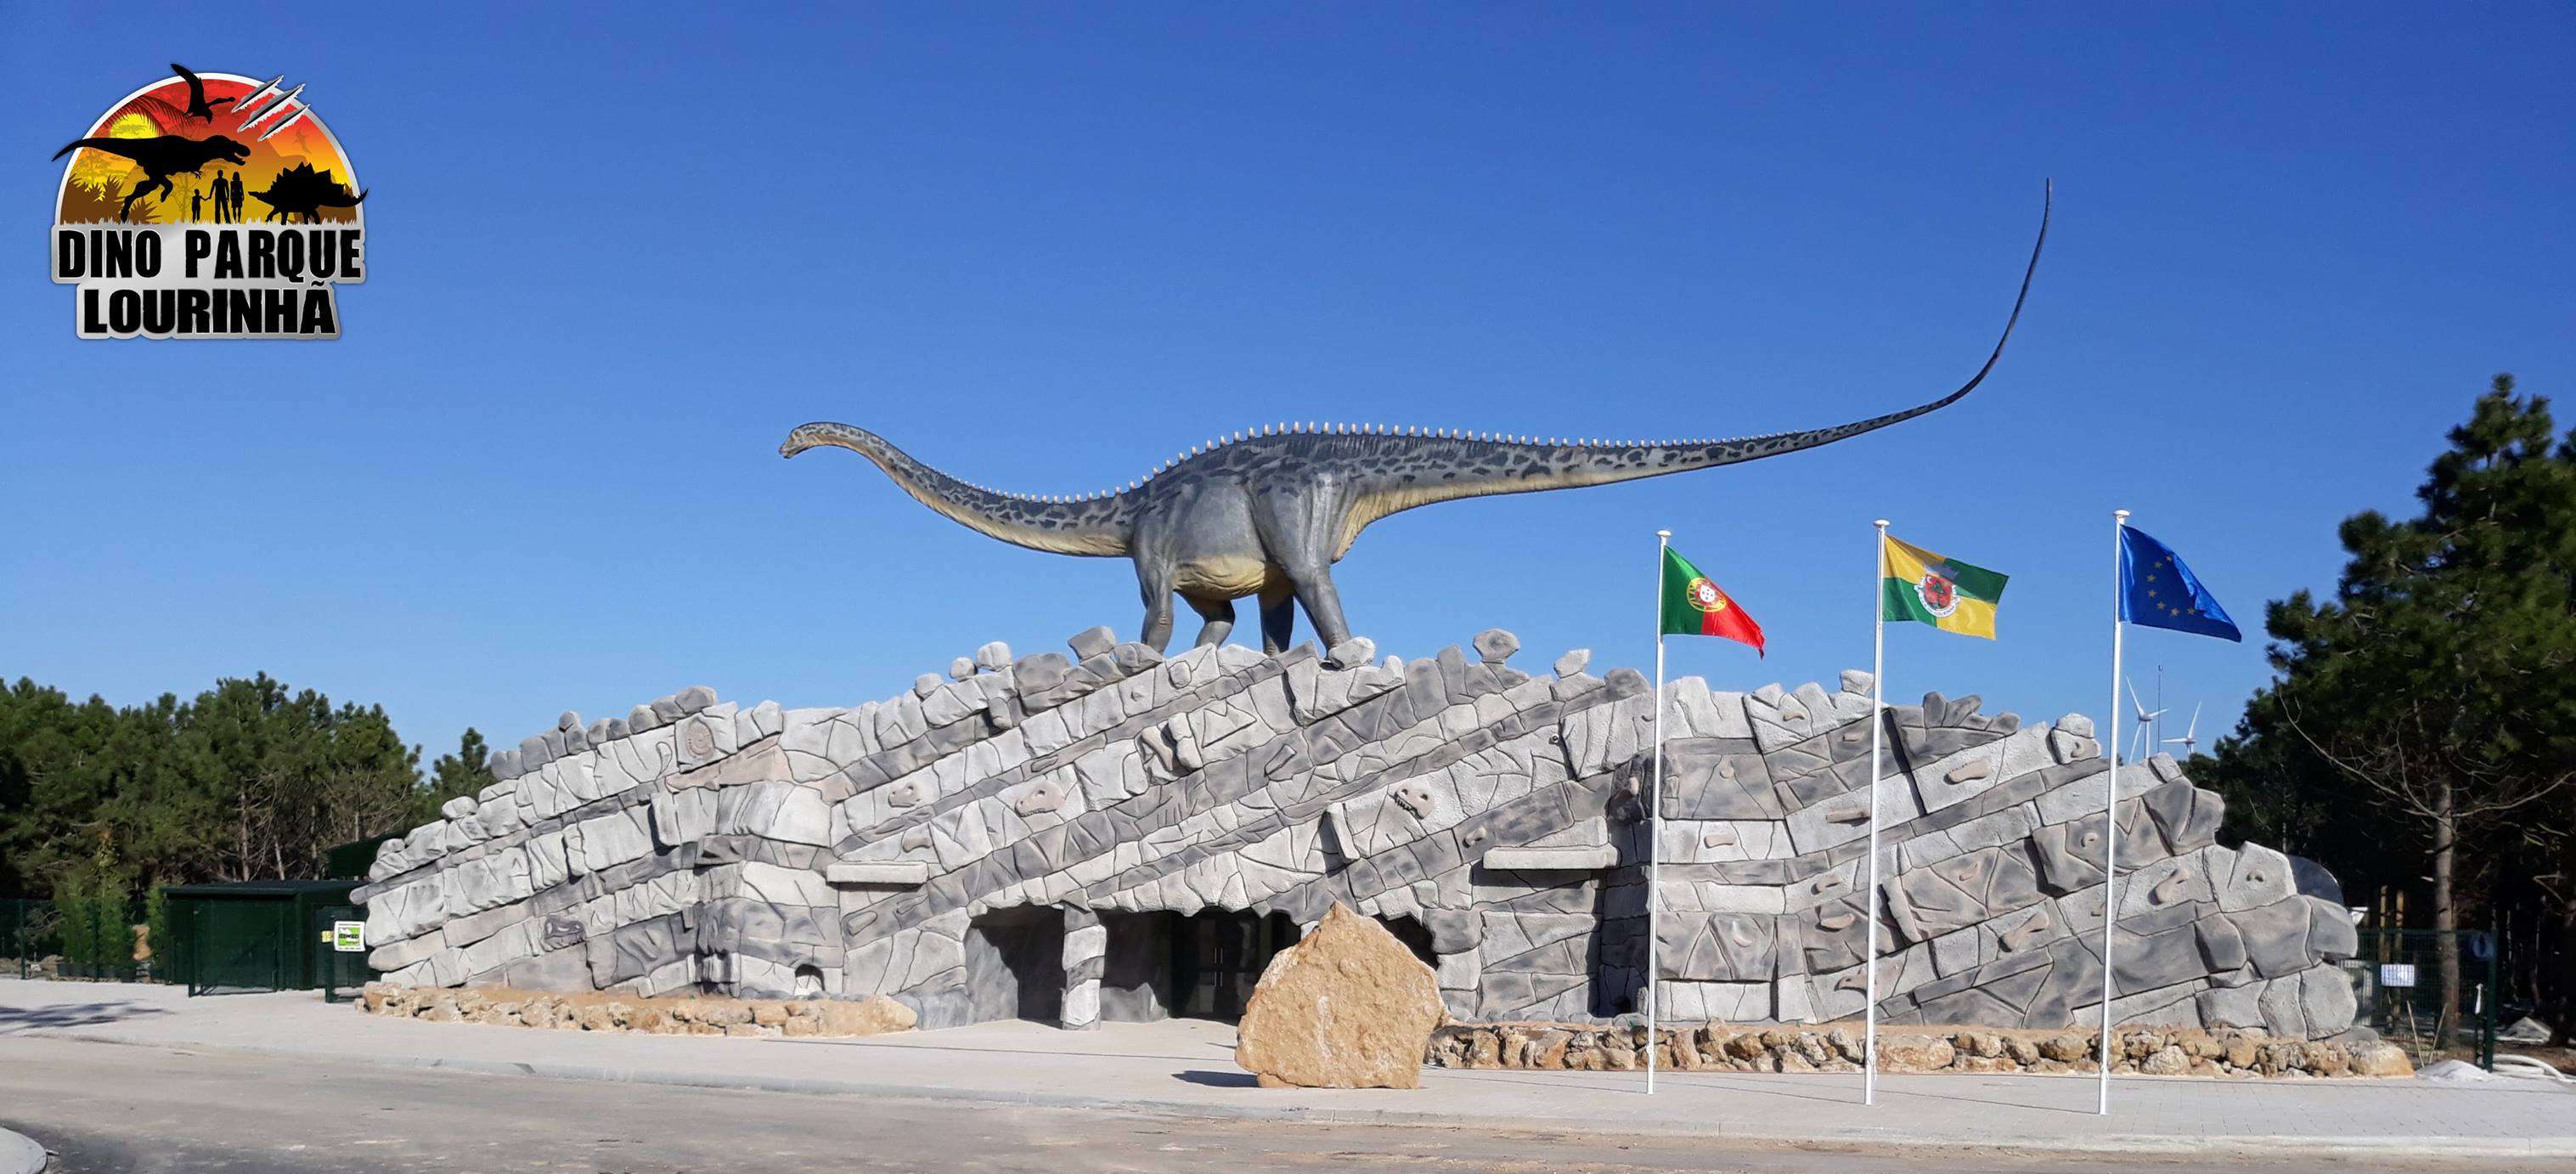 Portugal abre Dino Parque Lourinha, mega recinto temático de dinosaurios